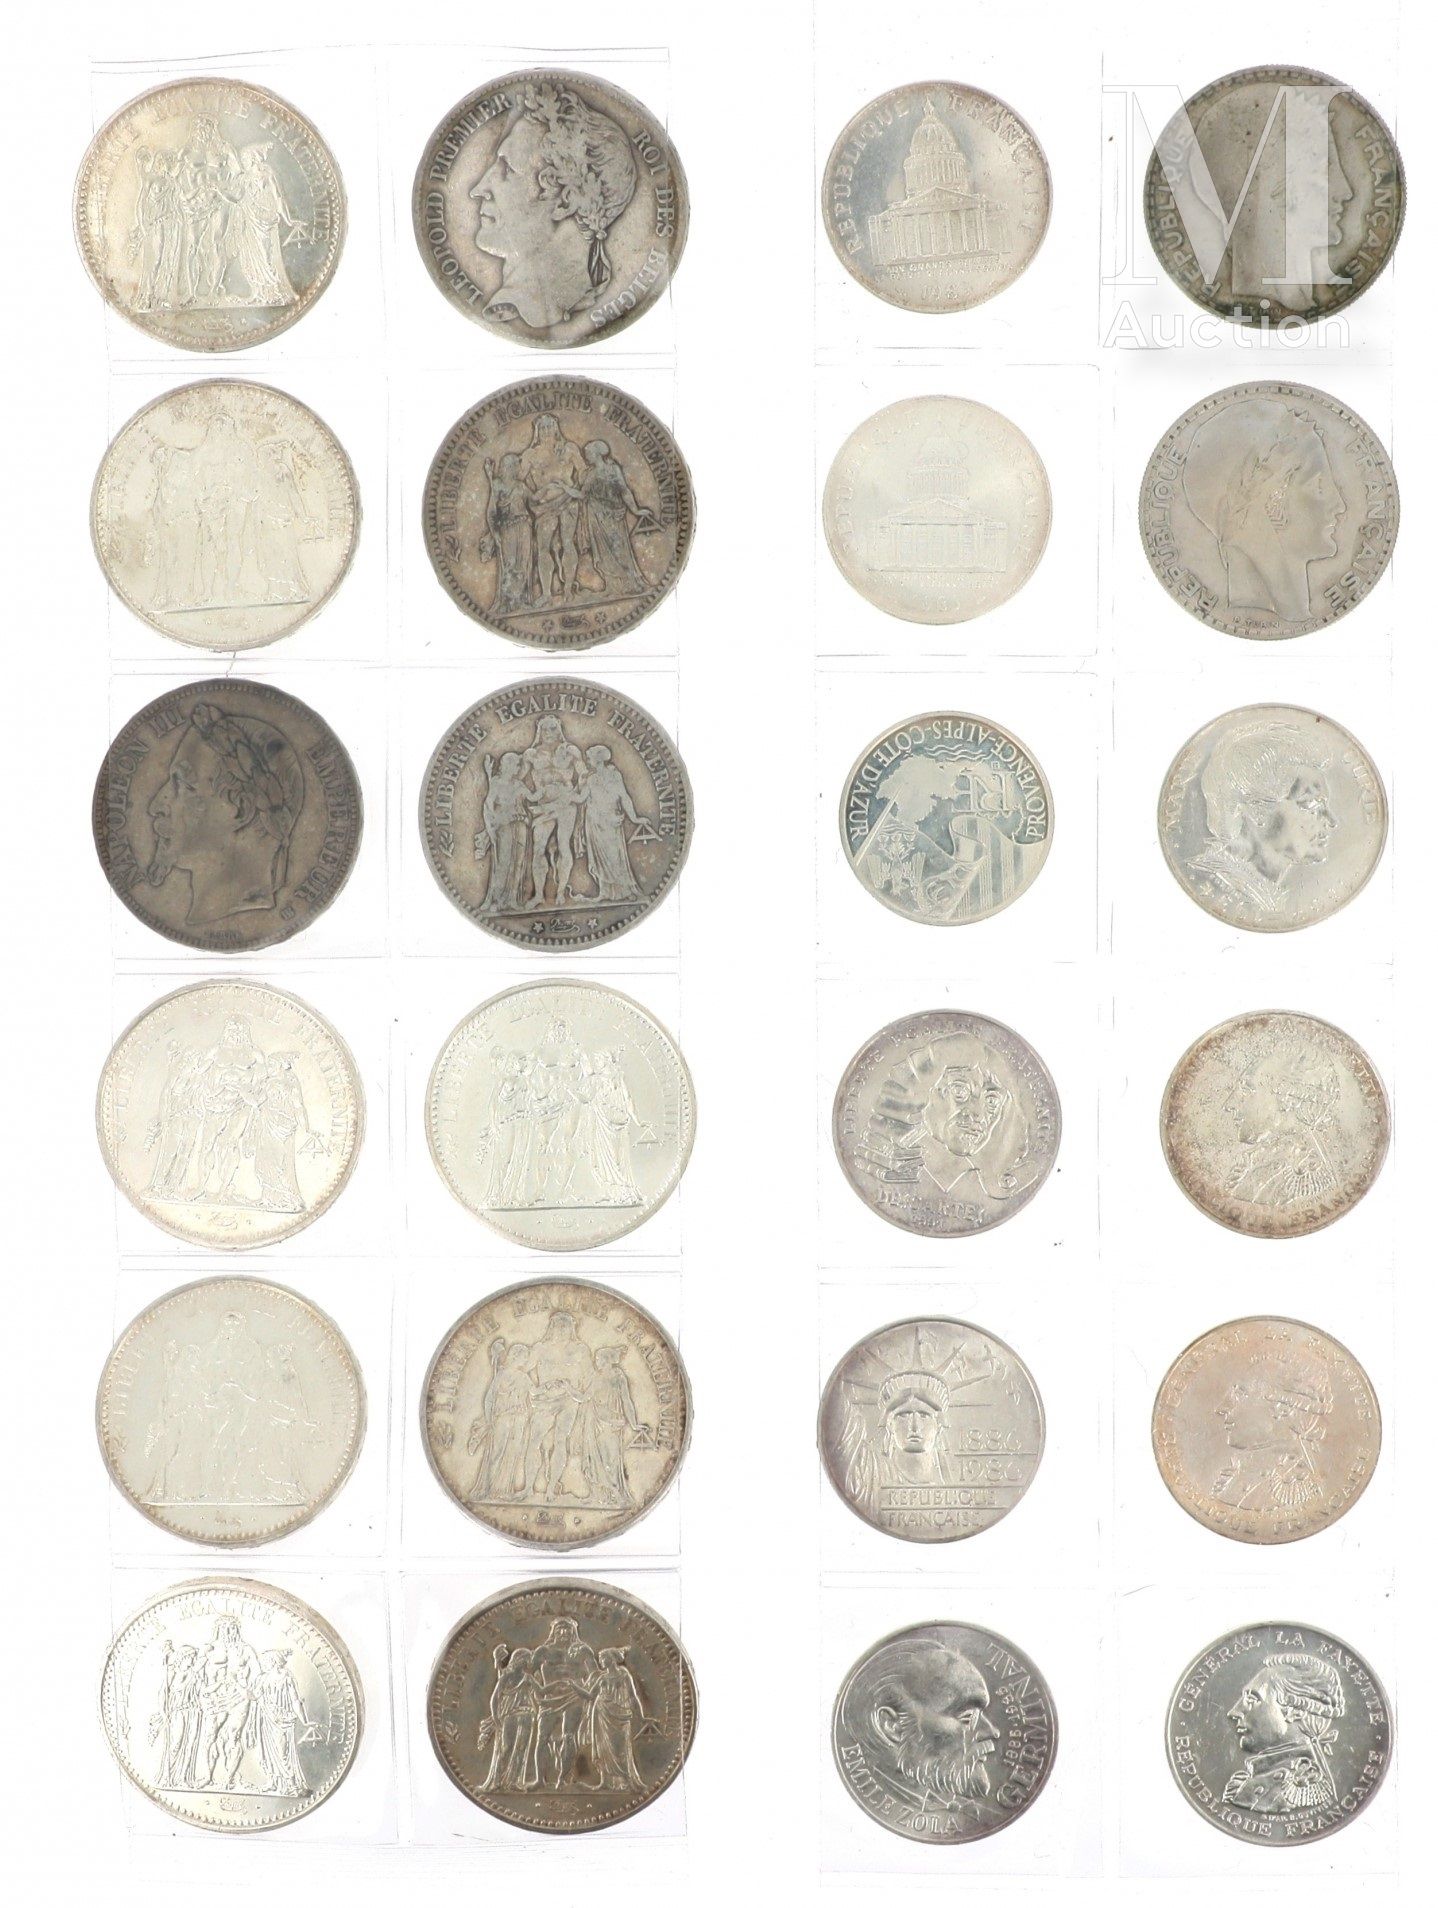 LOT DE PIECES DE MONNAIE EN ARGENT Lote de monedas de plata que incluye :

- 3 x&hellip;